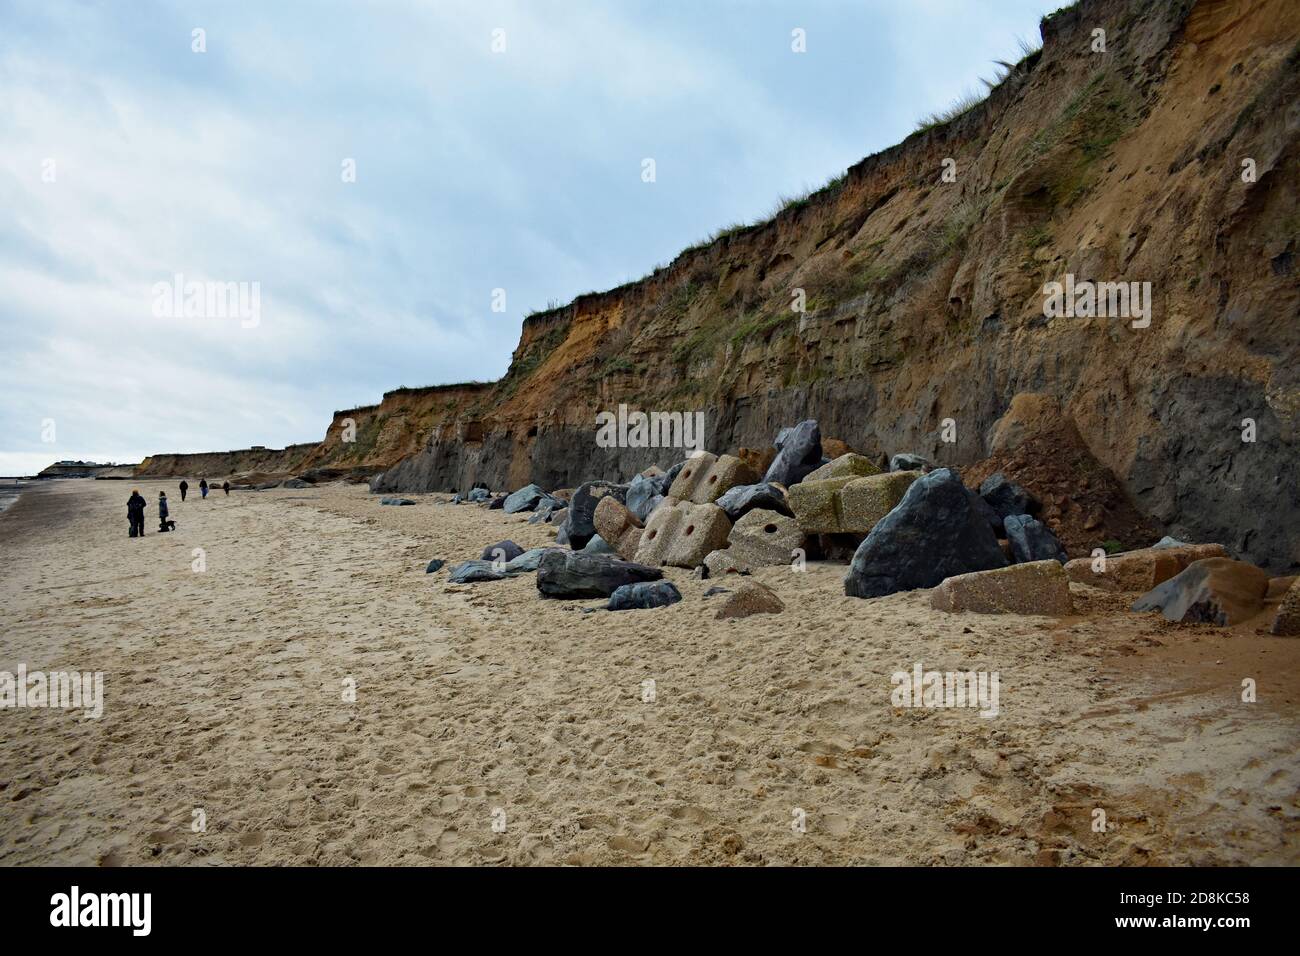 Los visitantes y los caminantes de perros caminan a lo largo de la base de los acantilados en la playa de Happisburgh, que están sometidos a la erosión costal en Norfolk, Inglaterra. Foto de stock